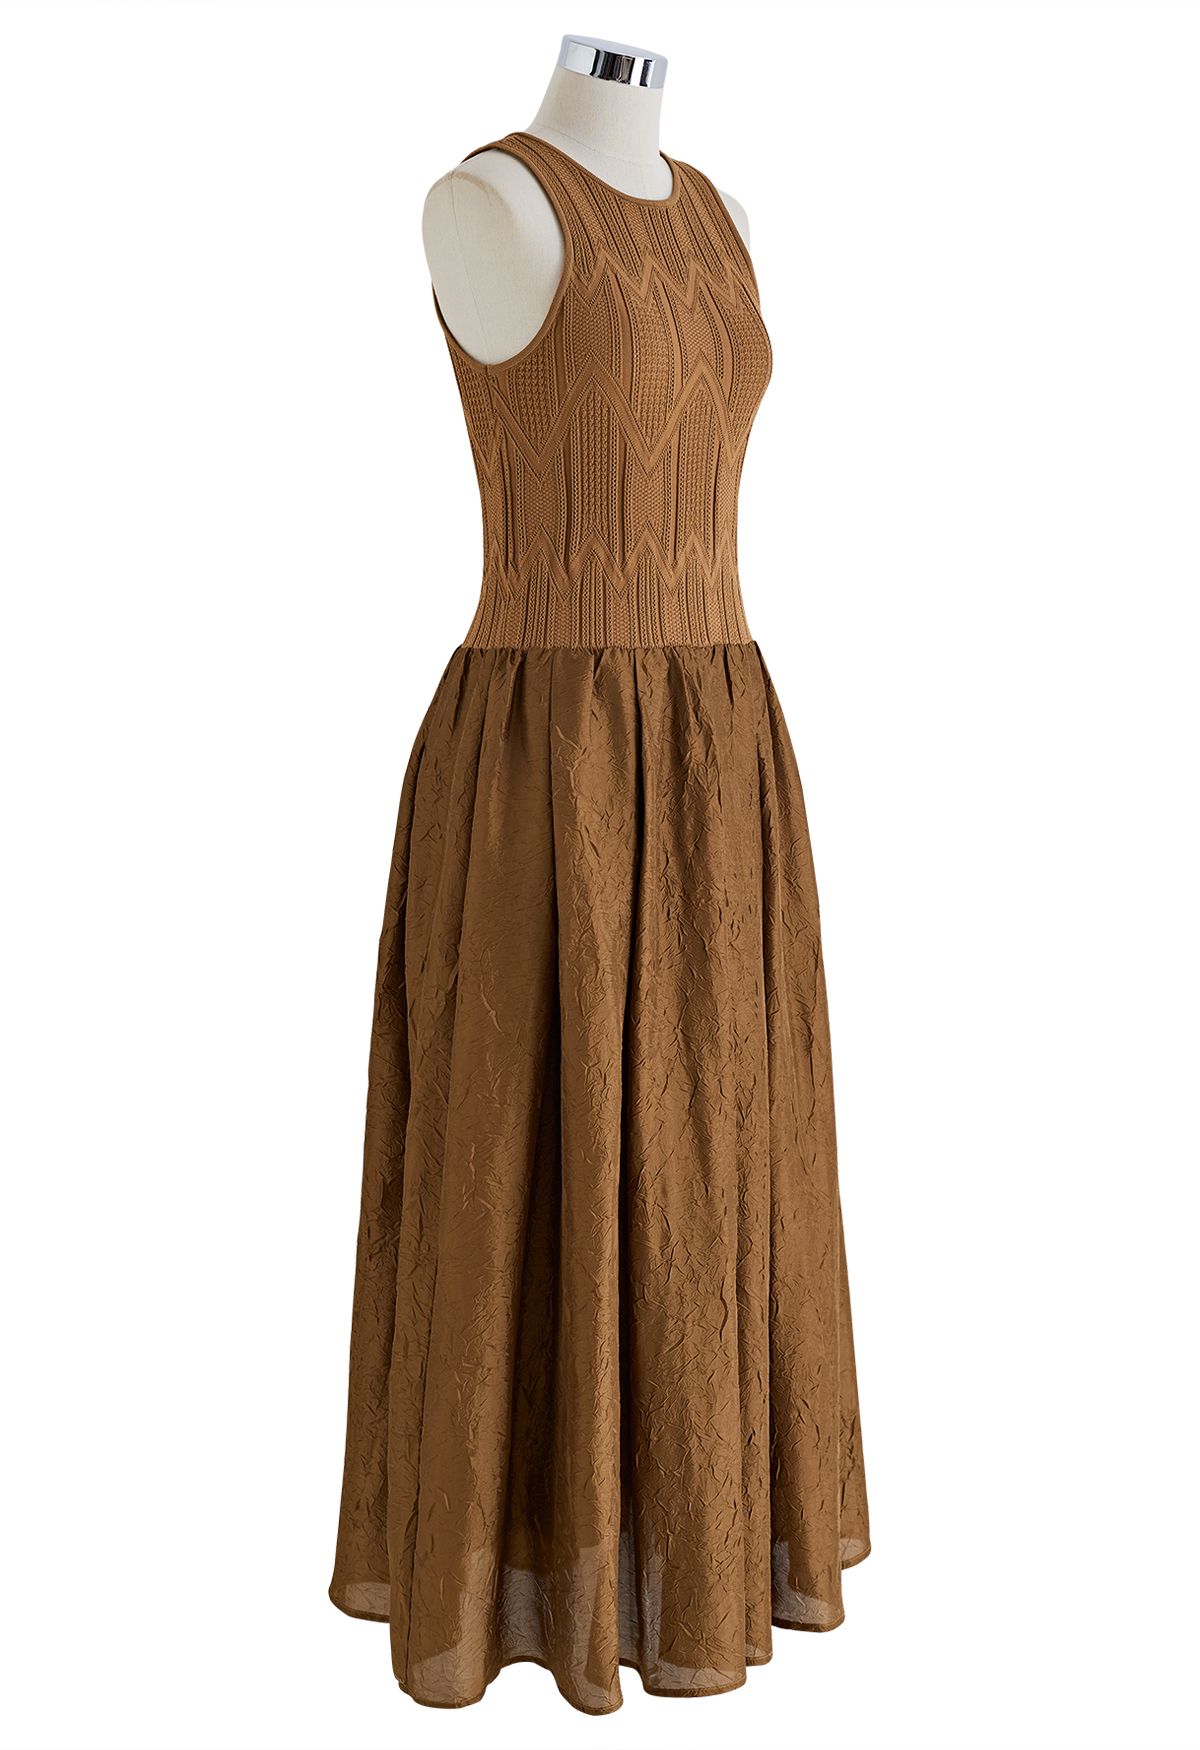 Ärmelloses Kleid mit gespleißter Struktur in Braun